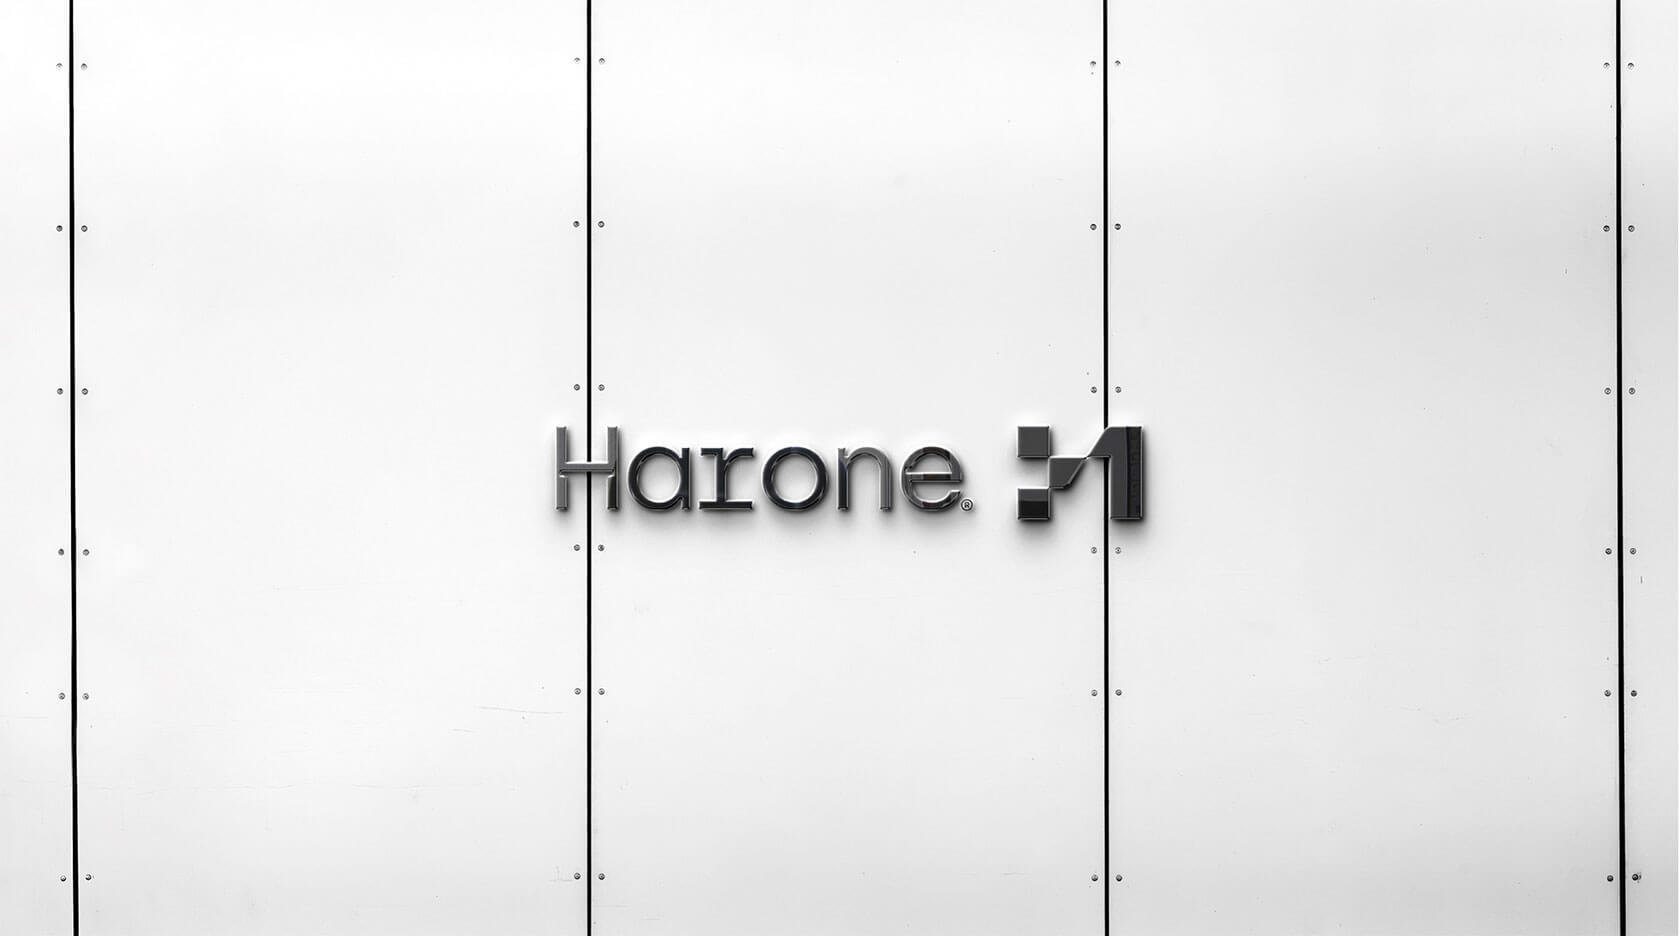 房地产公司Harone品牌视觉设计